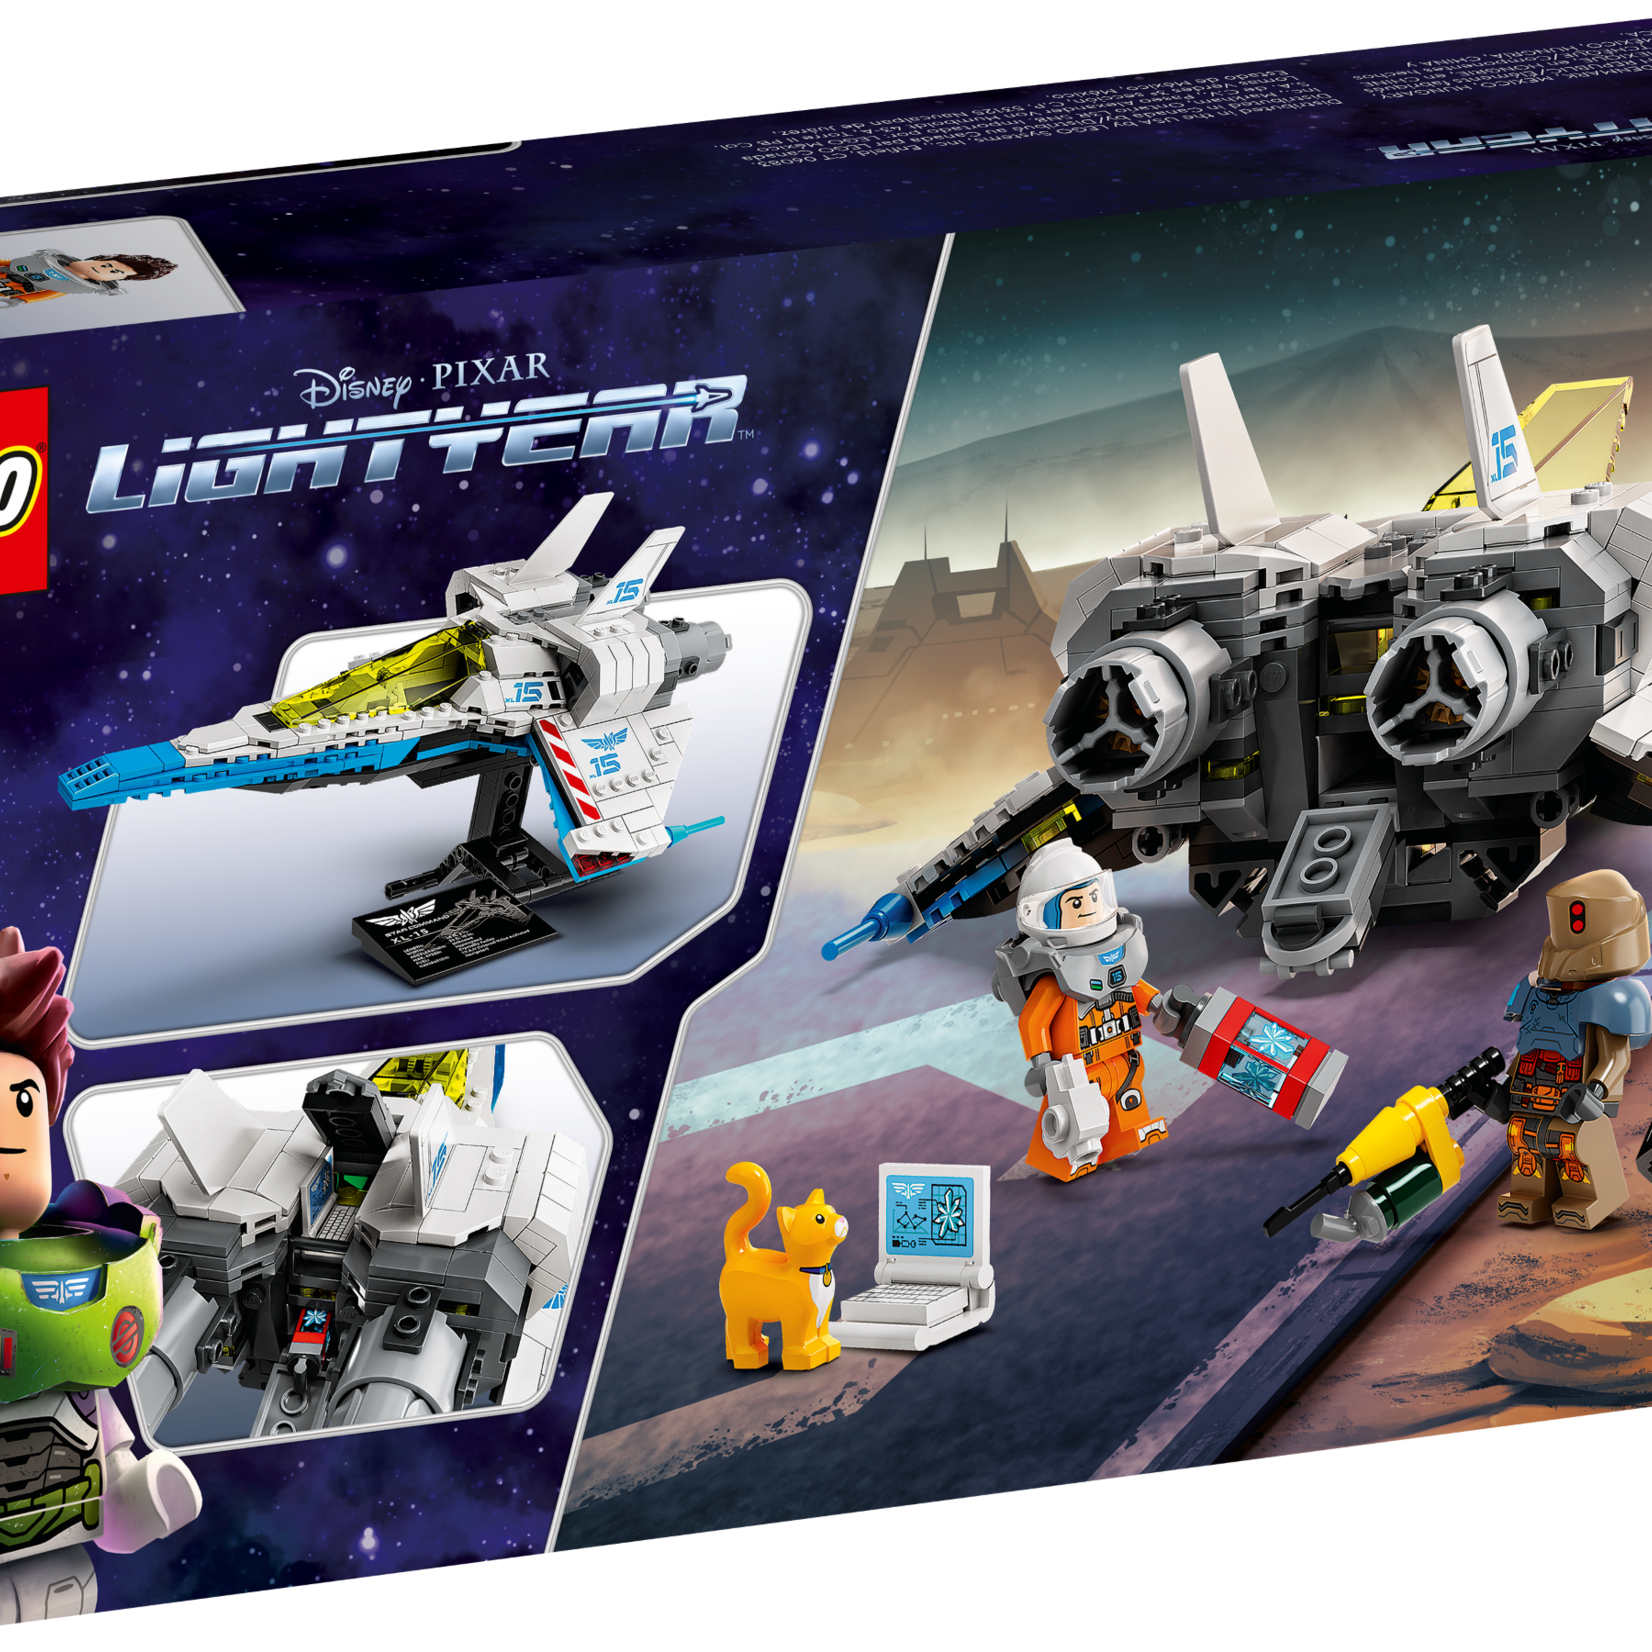 Lego Lego Lightyear de Disney et Pixar 76832 - Le vaisseau spatial XL-15